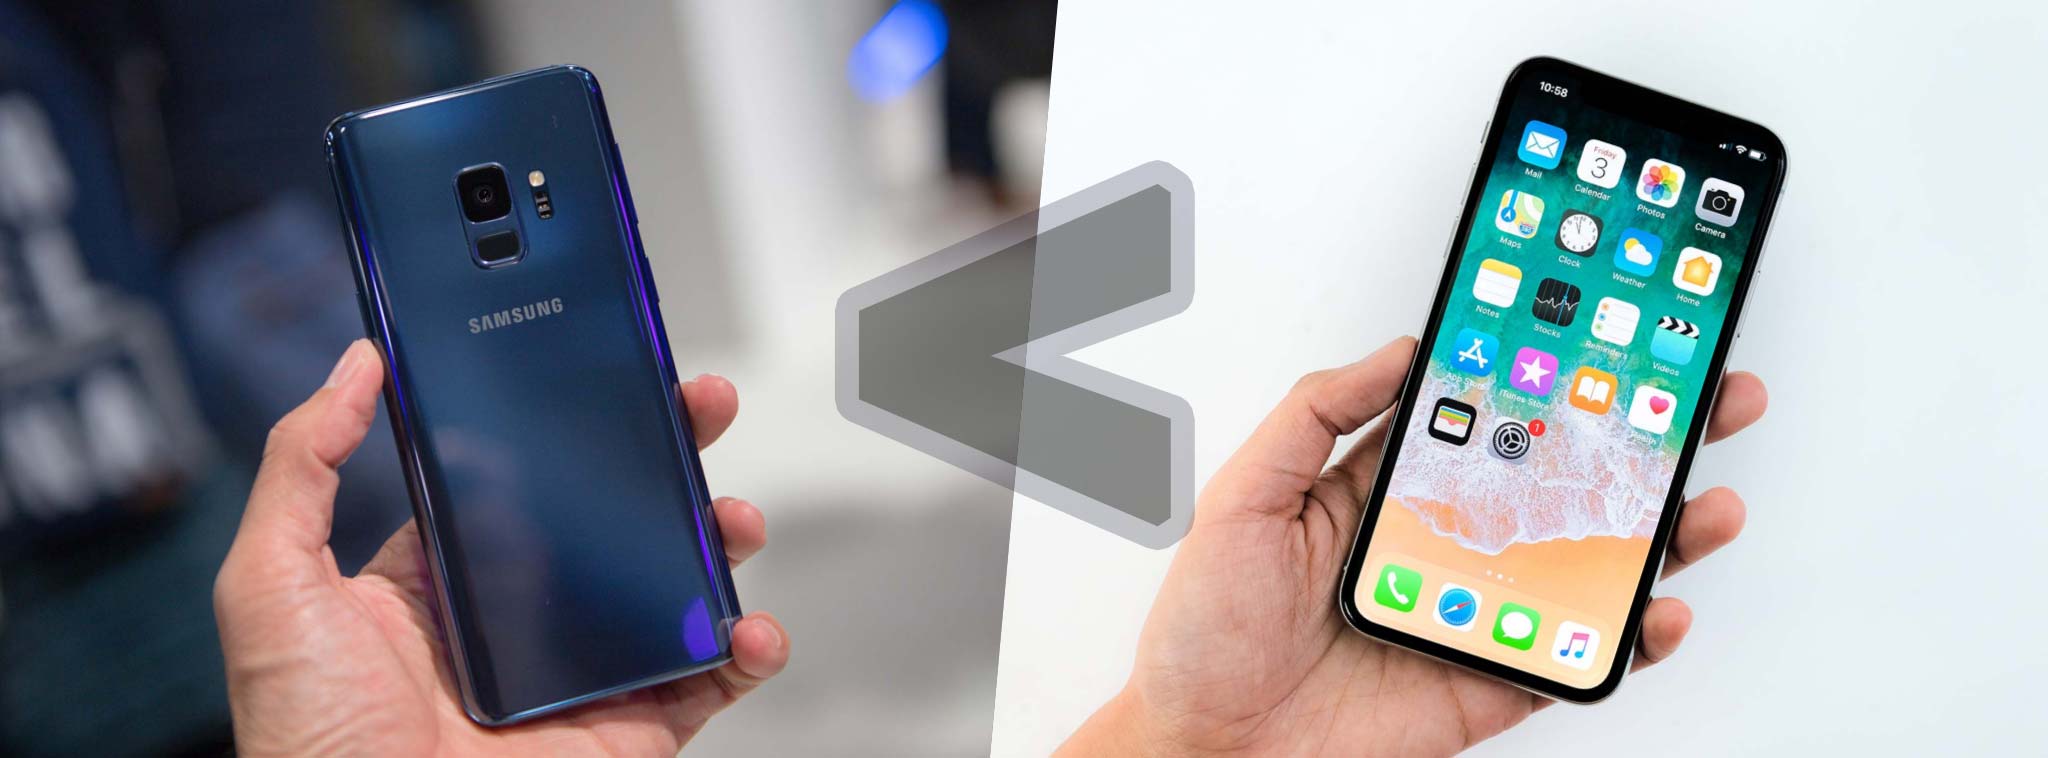 Galaxy S9 dùng linh kiện mắc hơn nhưng tổng giá thành sản phẩm vẫn thấp hơn iPhone X